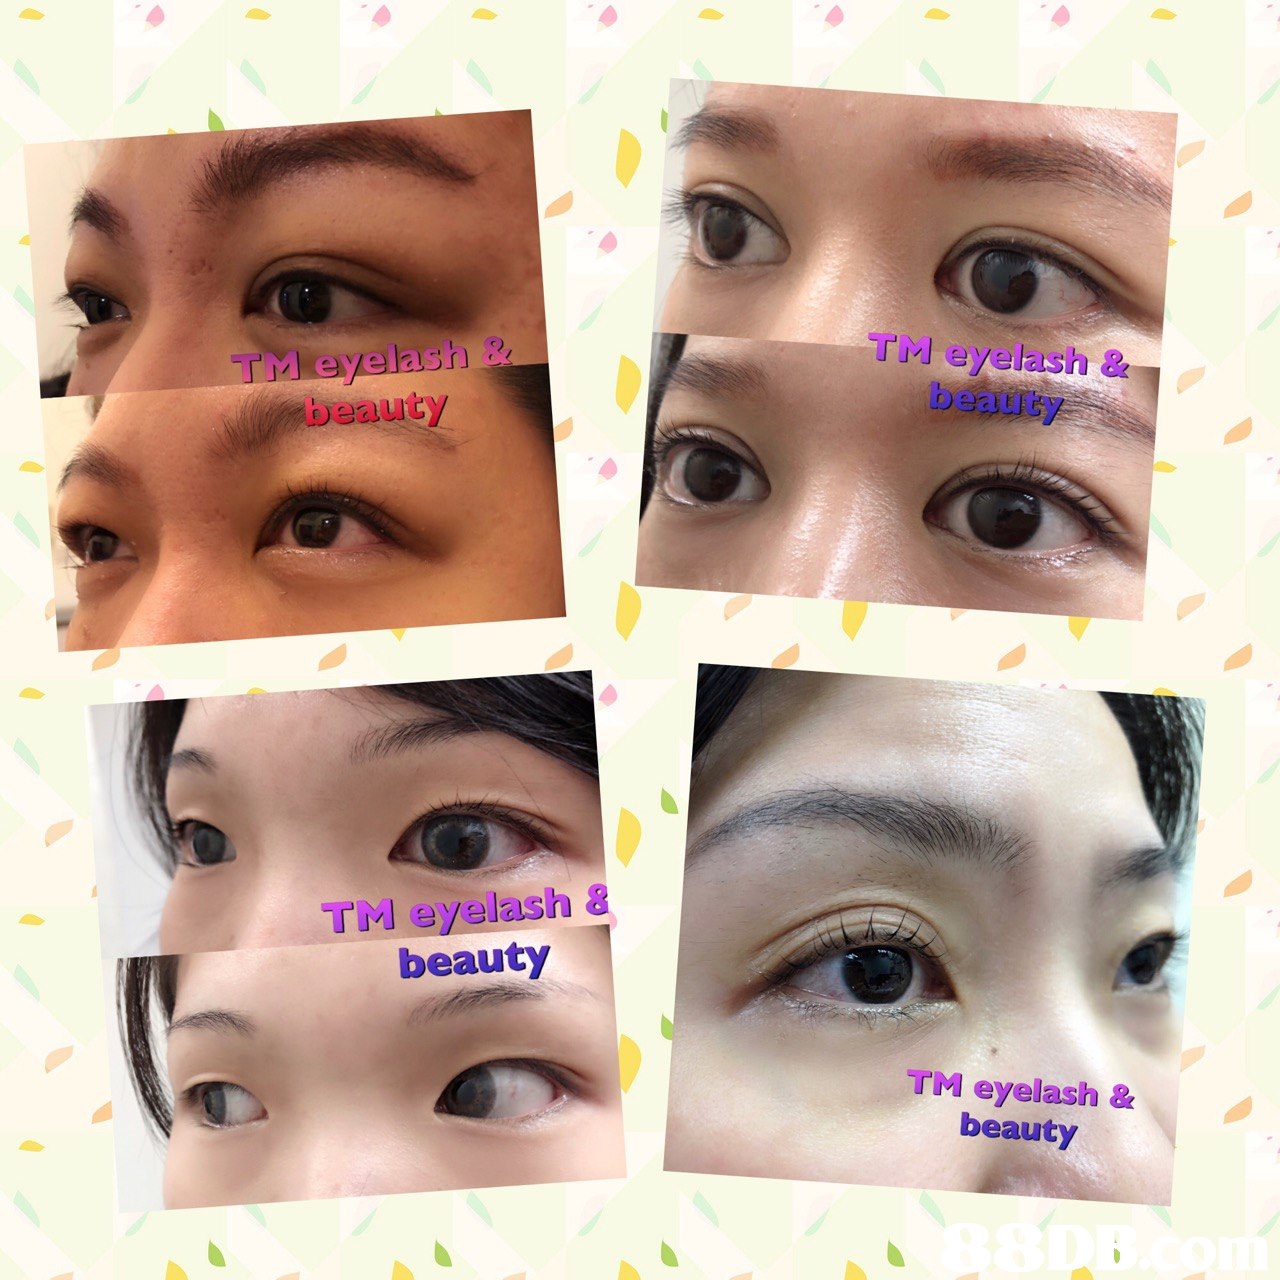 TM eyelash beauty TM eyelash & beauty TM eyelash 8 beauty TM eyelash & beauty  eyebrow,face,eyelash,nose,cheek